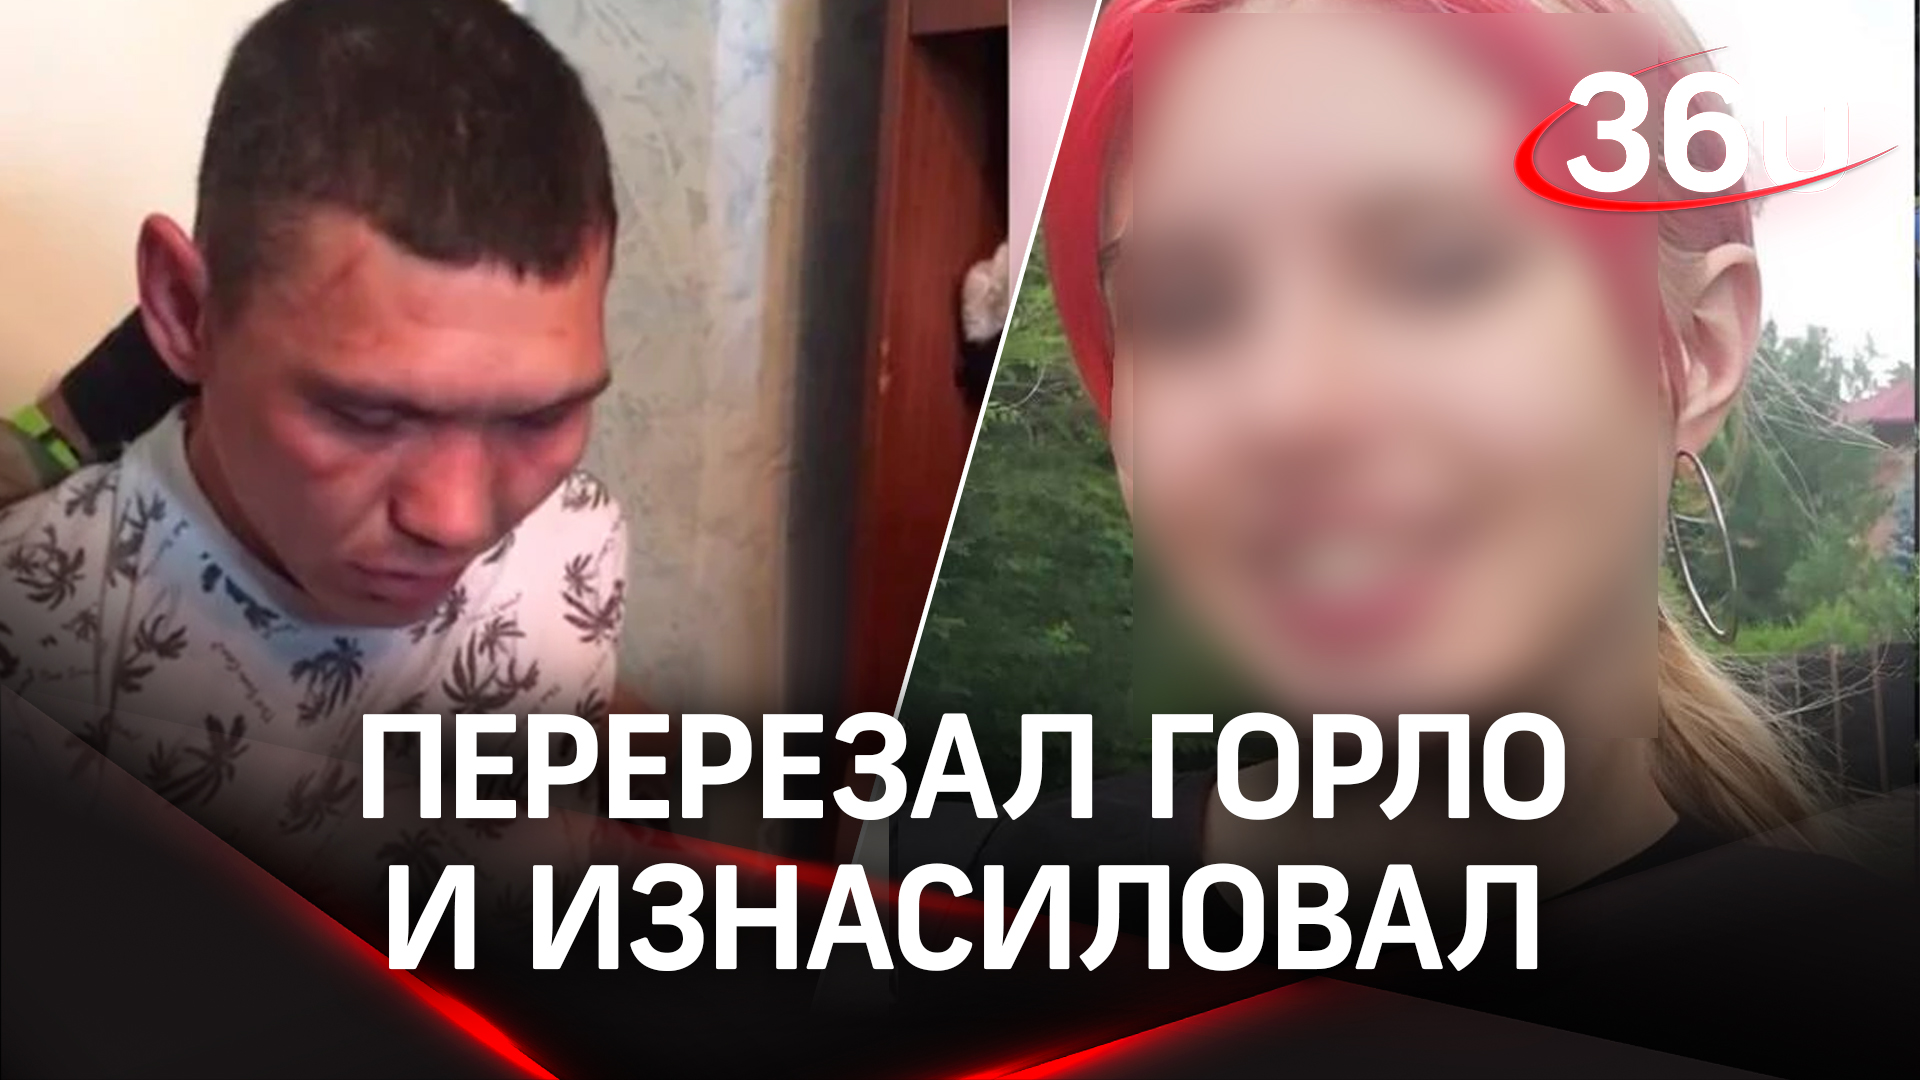 Изнасиловал и перерезал горло. Убийство школьницы в Дивногорске всколыхнуло весь город